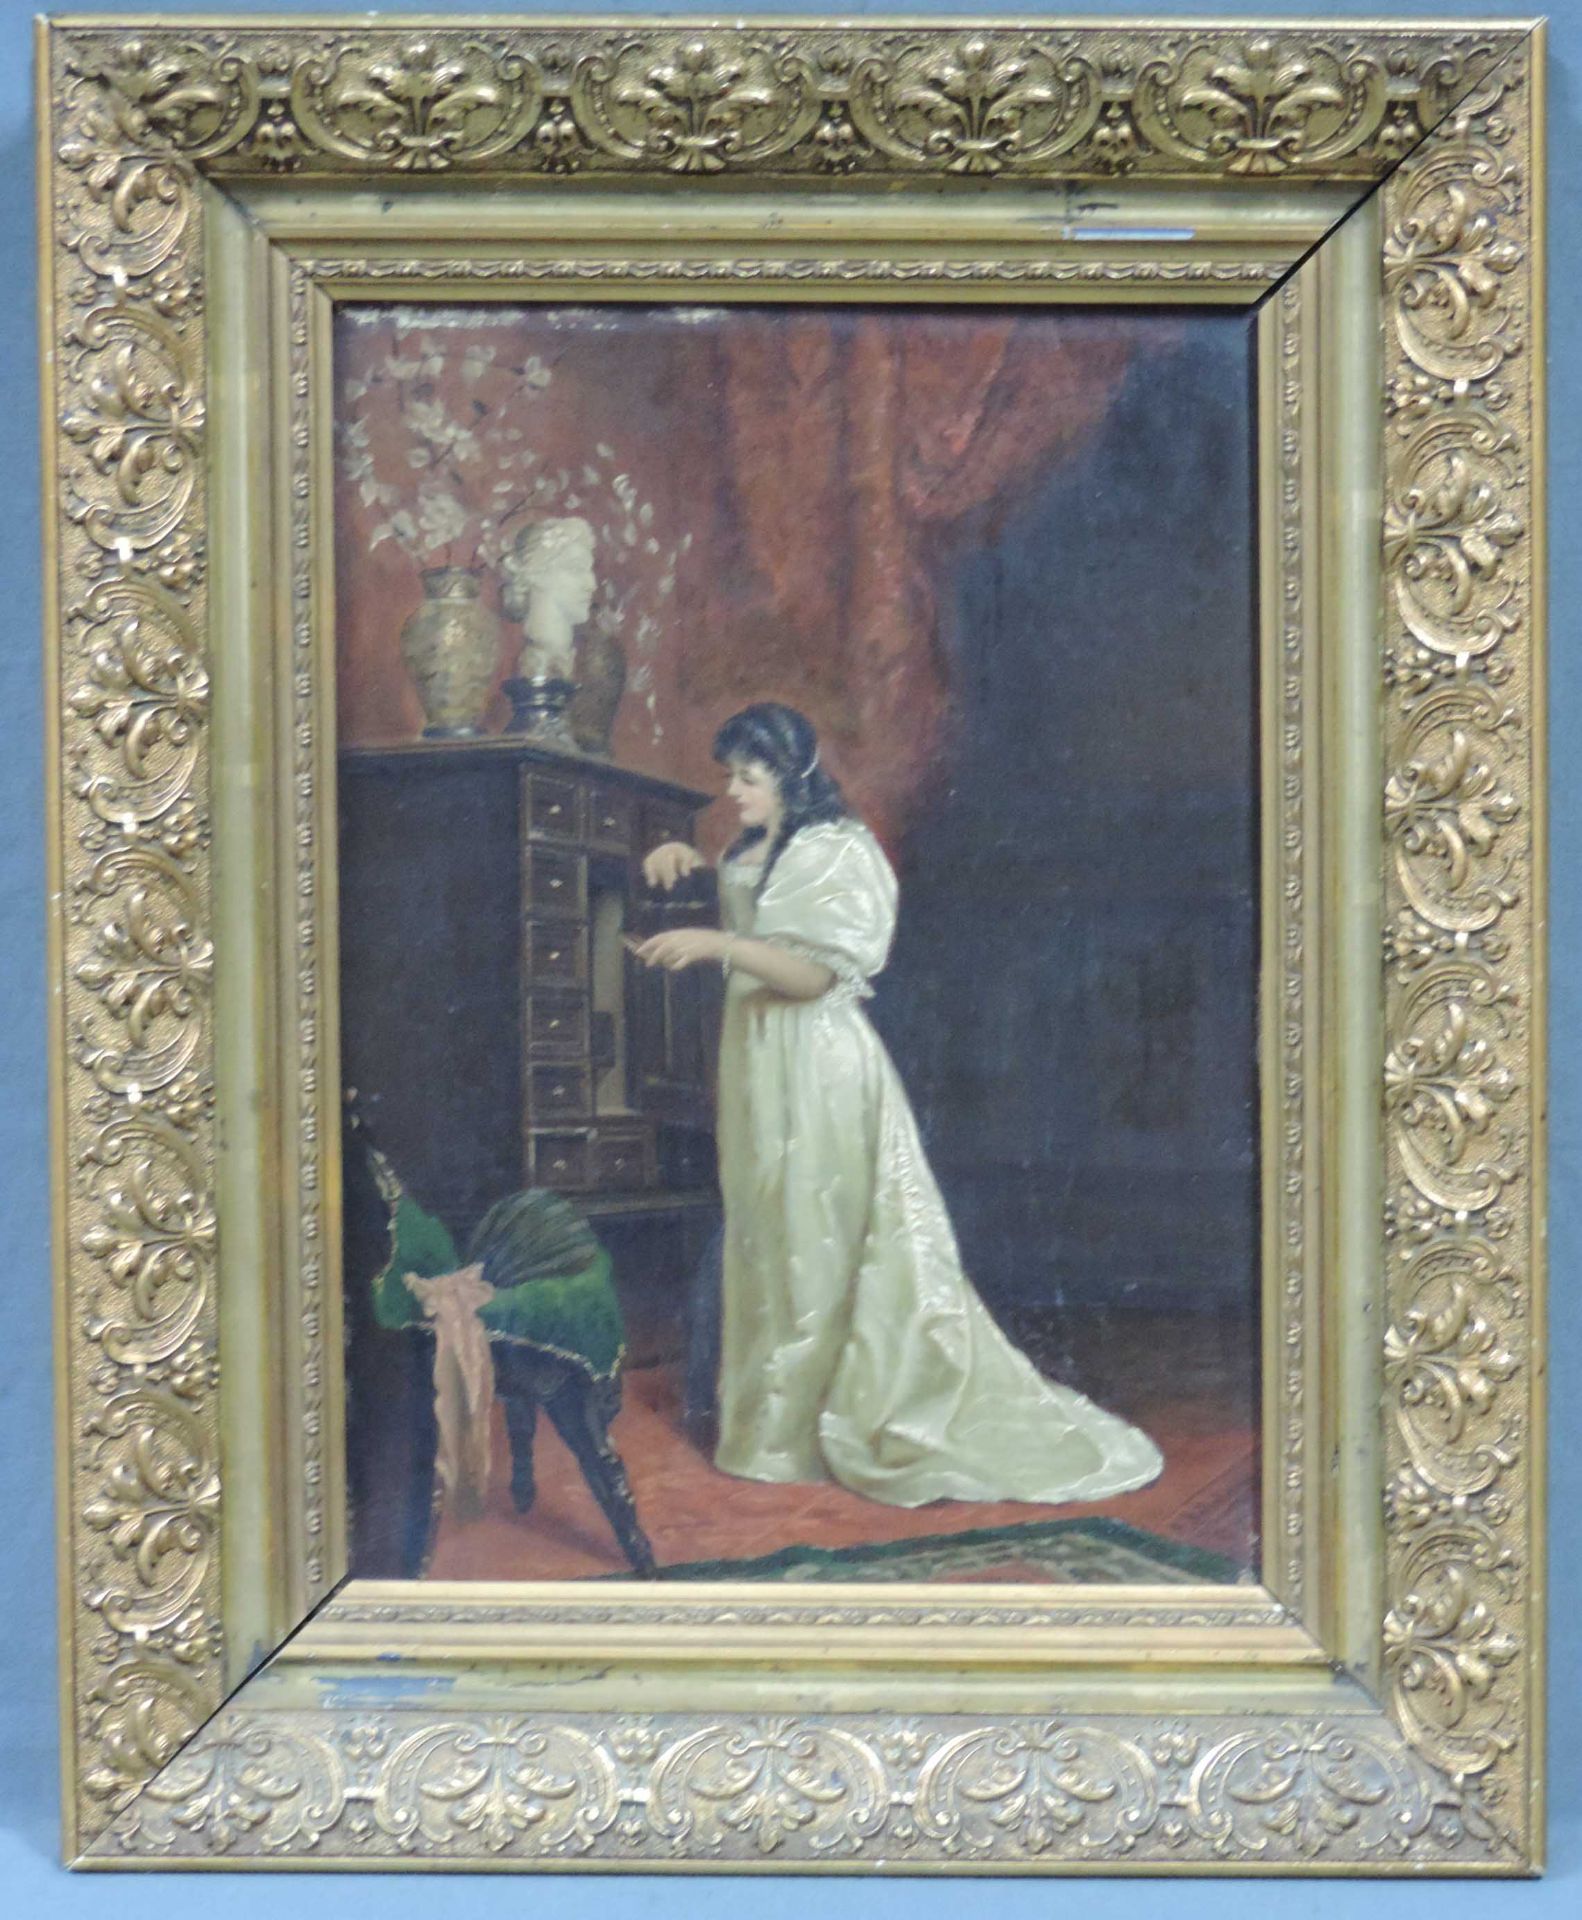 Unbekannt (XIX). Feine Dame, der Liebesbrief.30,5 cm x 22 cm. Gemälde, Öl auf Holz. Undeutlich